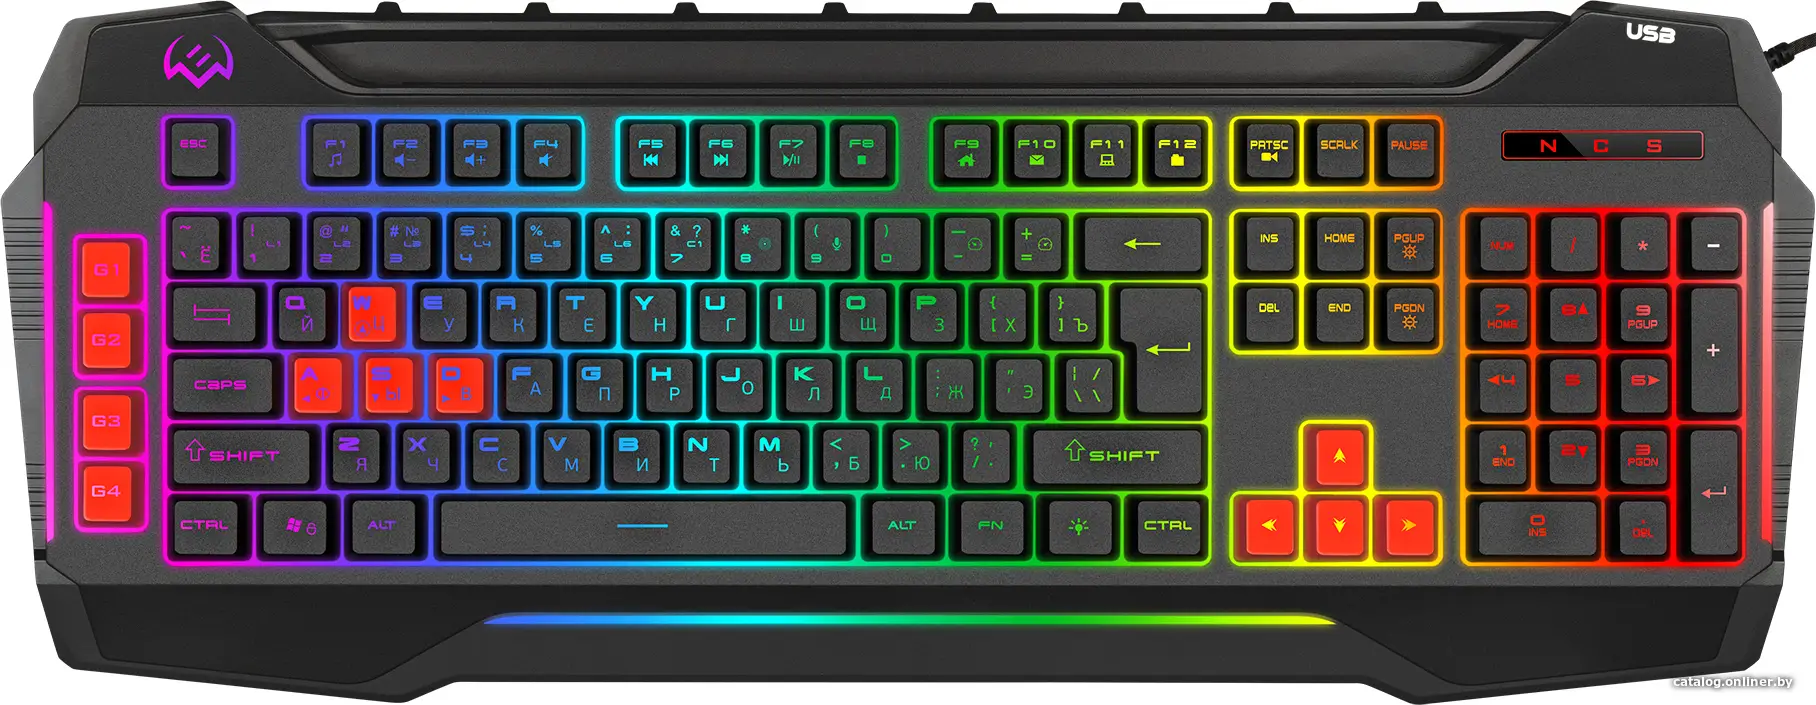 Купить Игровая клавиатура SVEN KB-G8800, цена, опт и розница